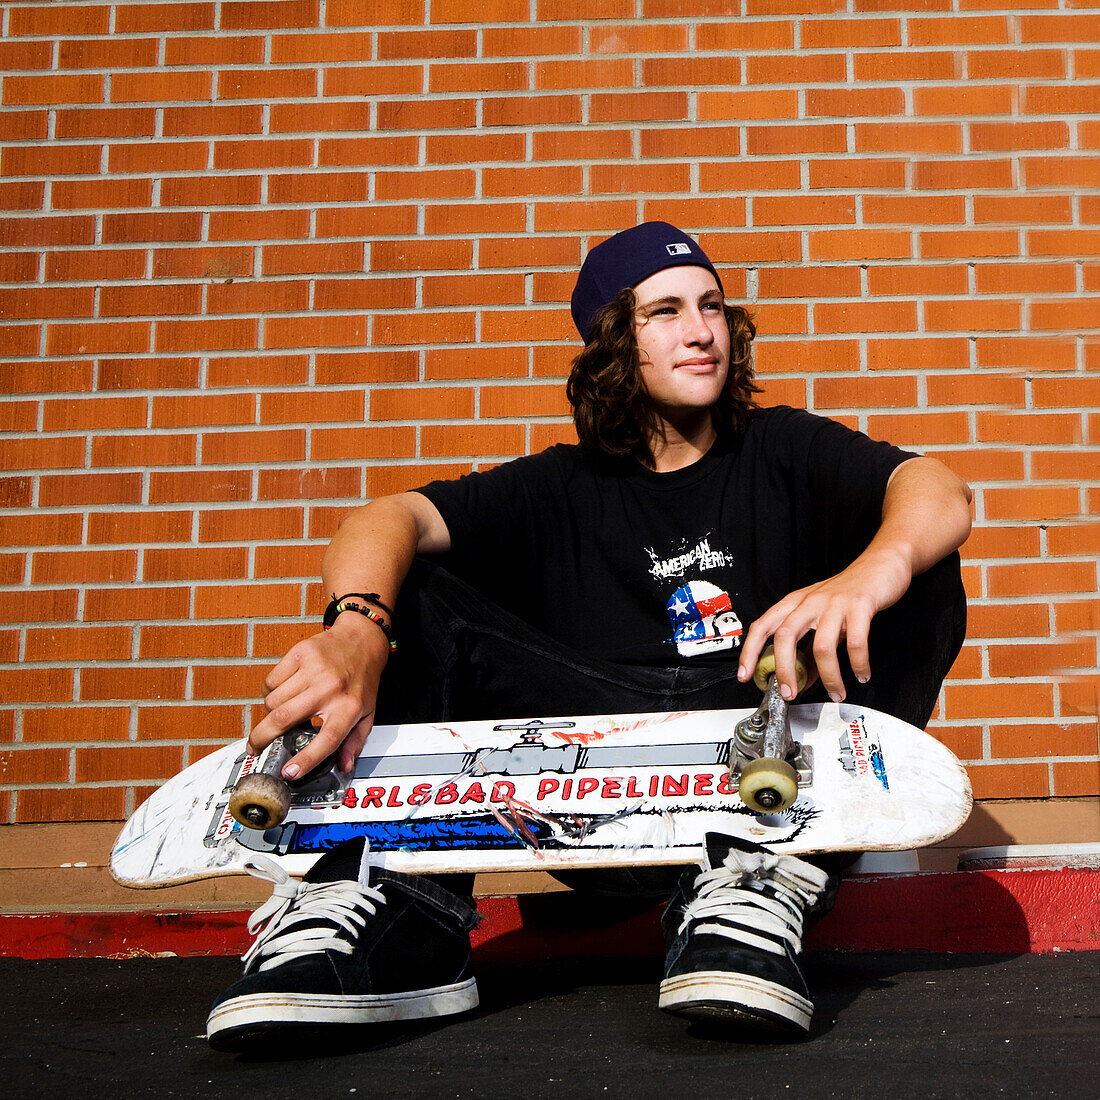 High school aged skateboarder sitting on a curb, Oceanside, California.